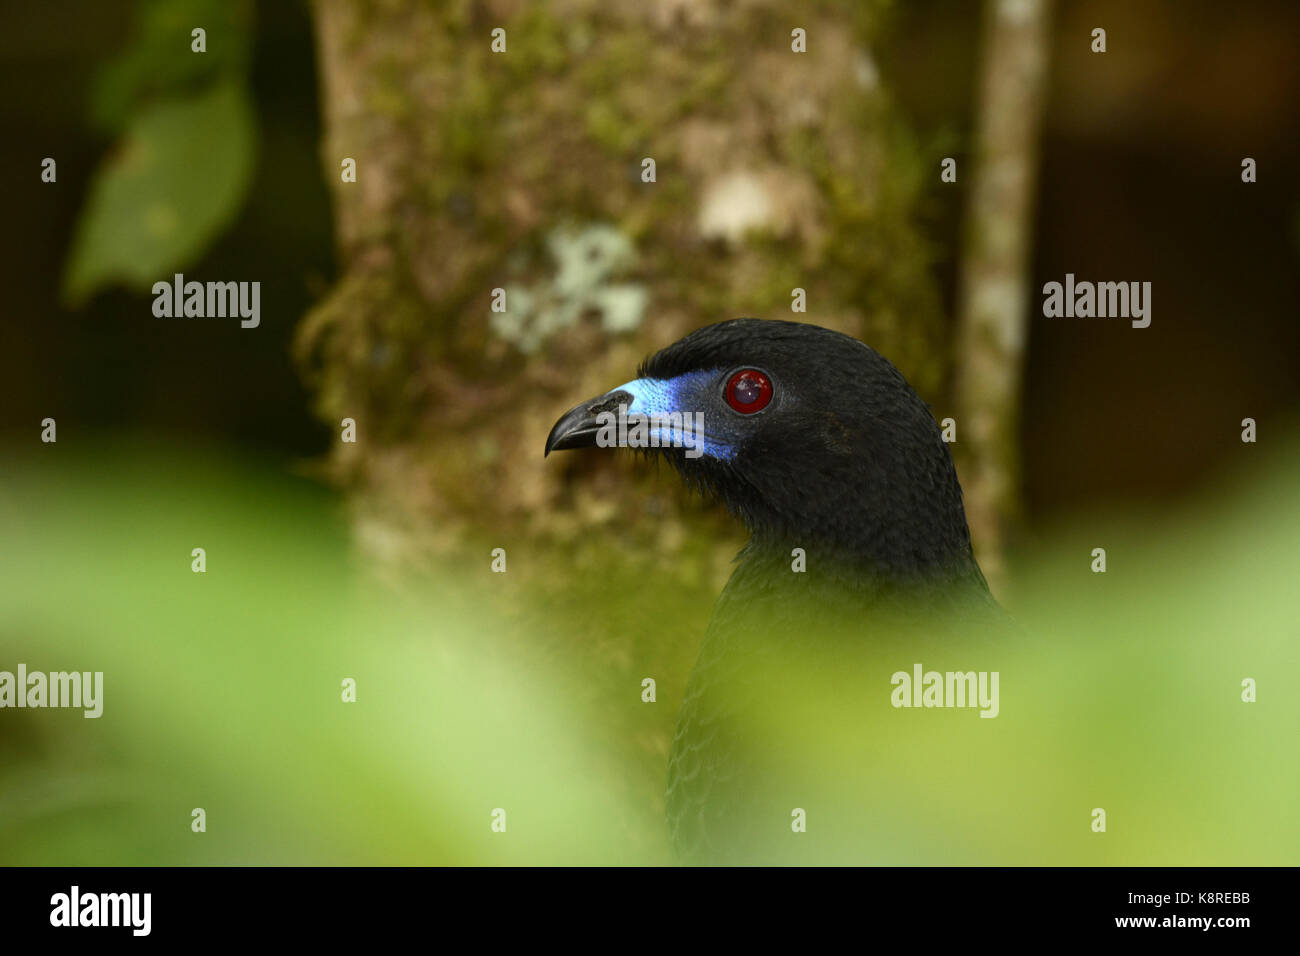 La pava negra (chamaepetes unicolor) adulto escondido detrás de la vegetación, cerca de la cabeza, Turrialba, Costa Rica, marzo Foto de stock